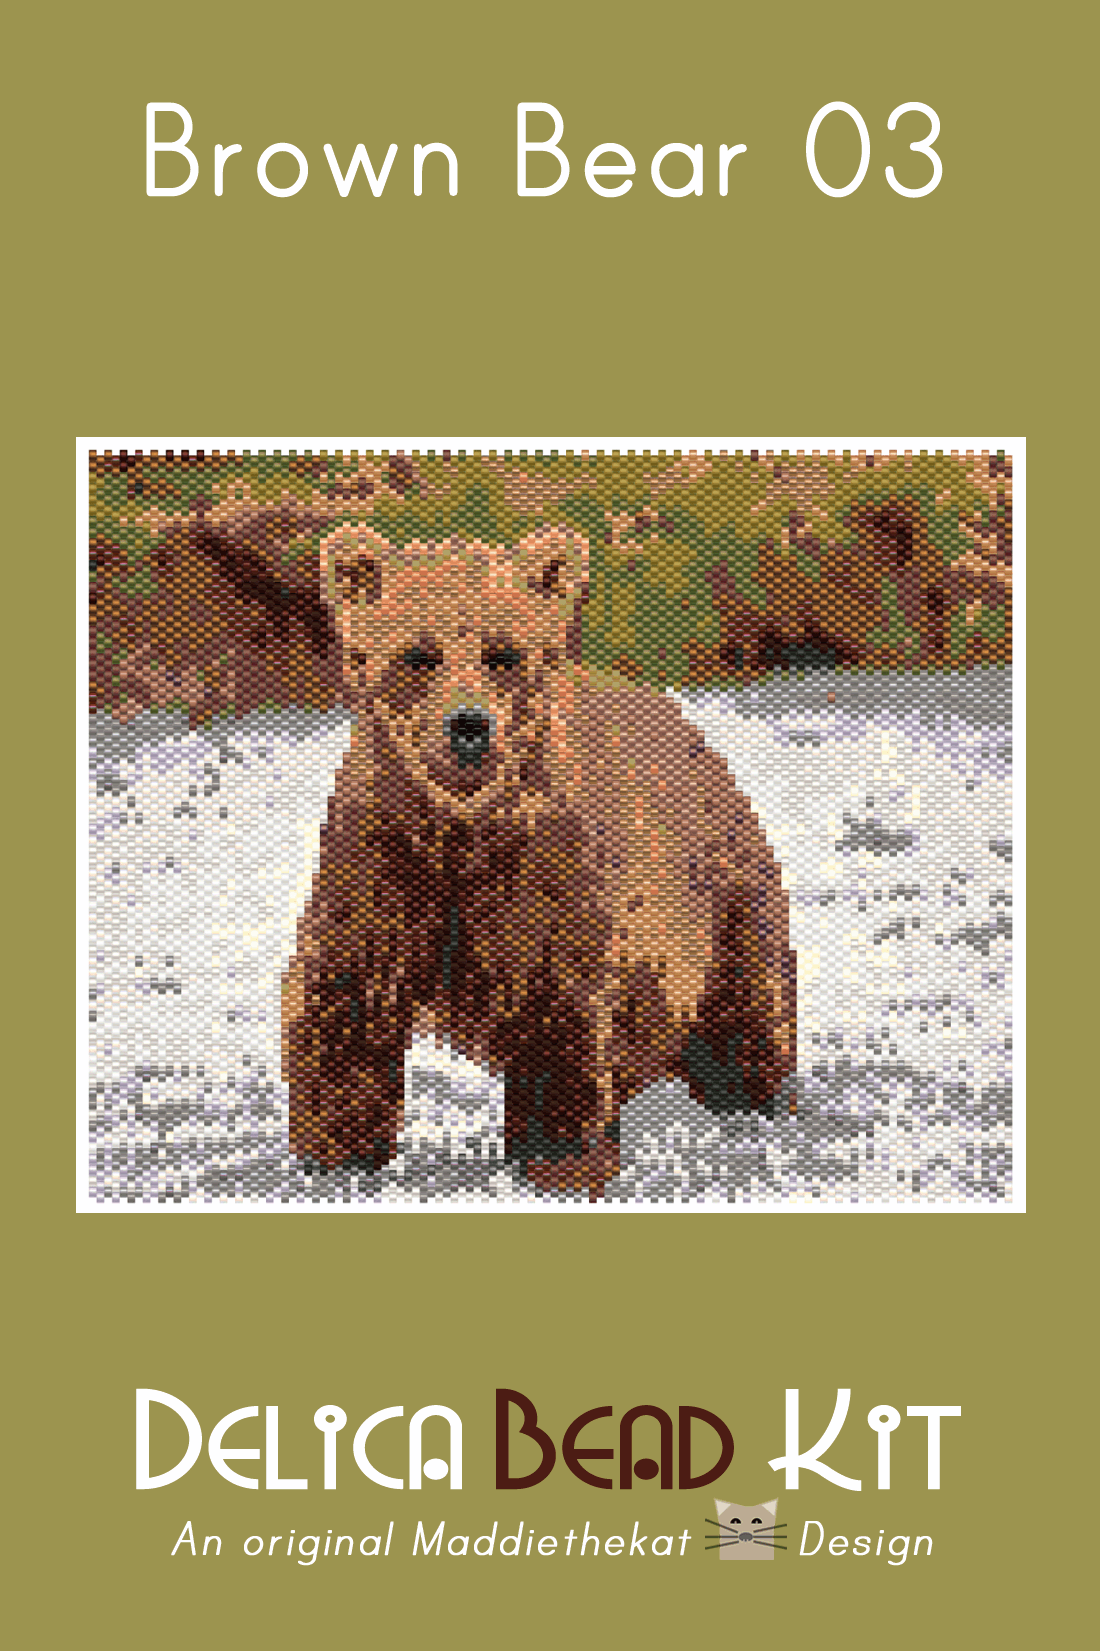 Brown Bear 03 Larger Peyote Bead Pattern PDF or Bead Kit